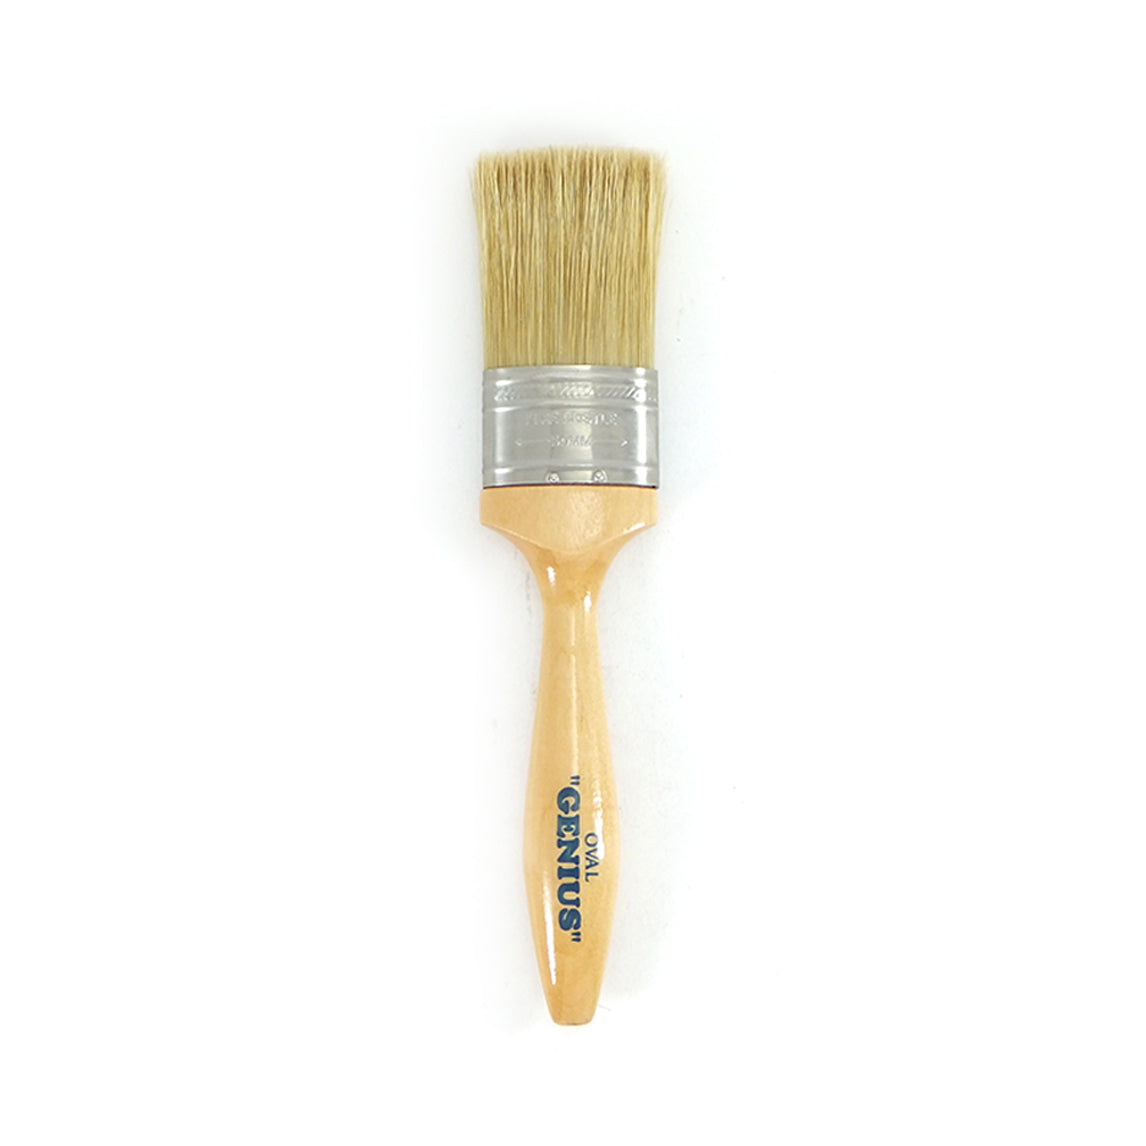 Genius Oval Paint Brush